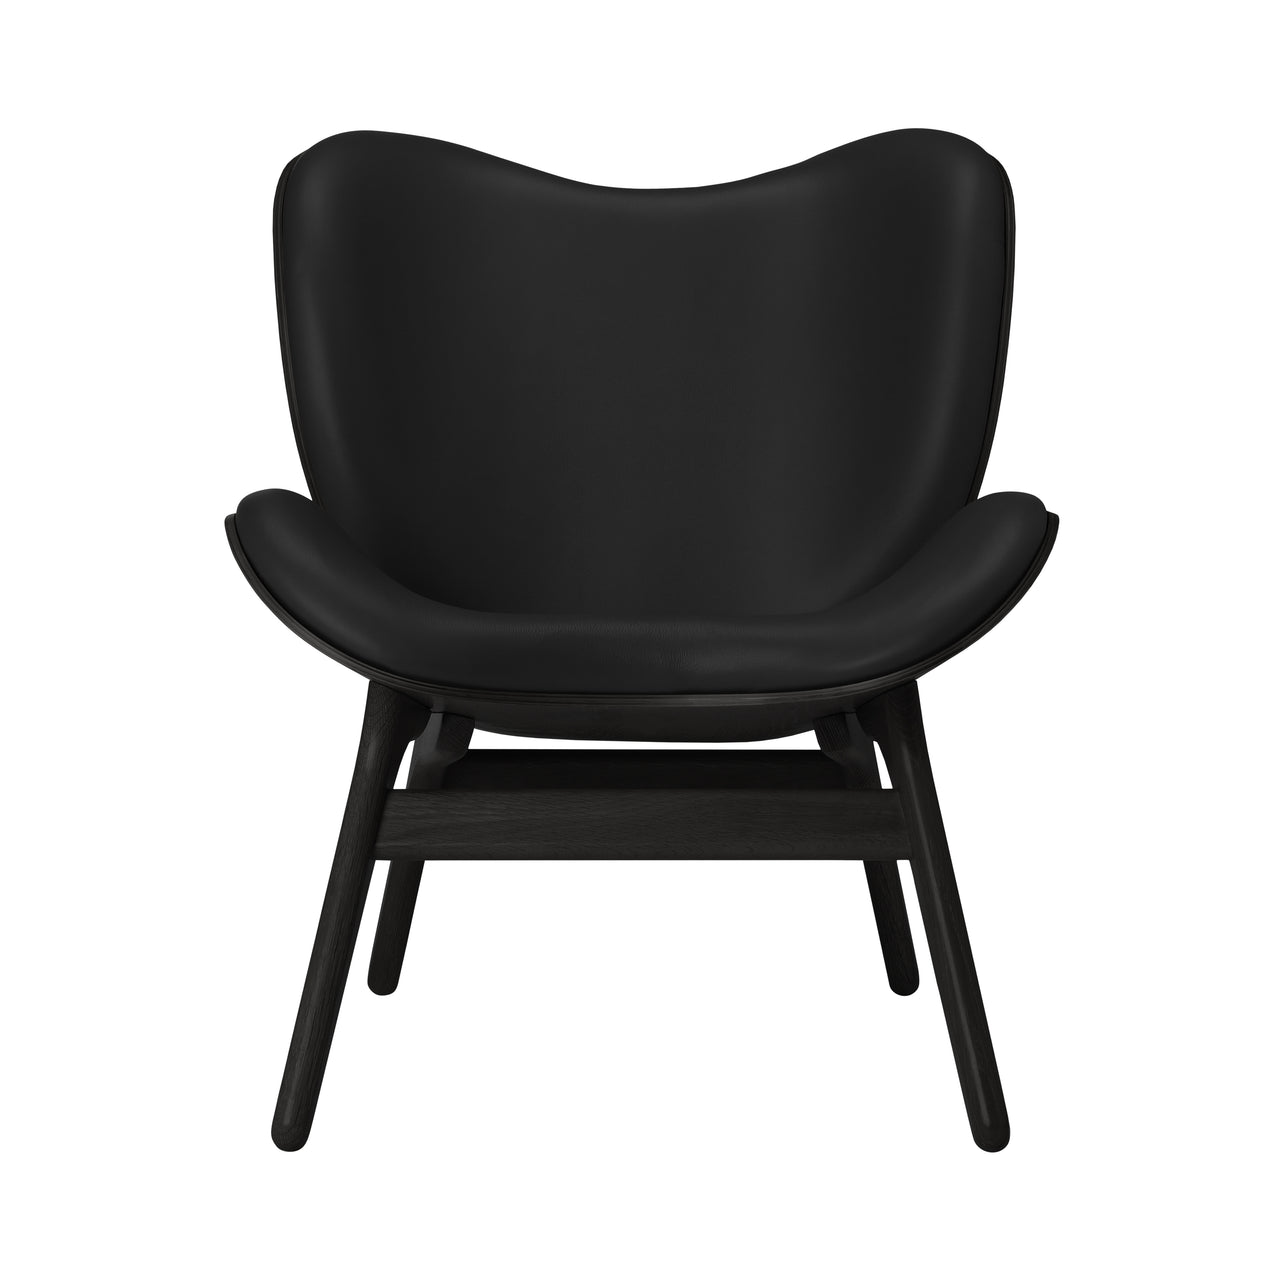 A Conversation Piece Lounge Chair: Black Oak + Black